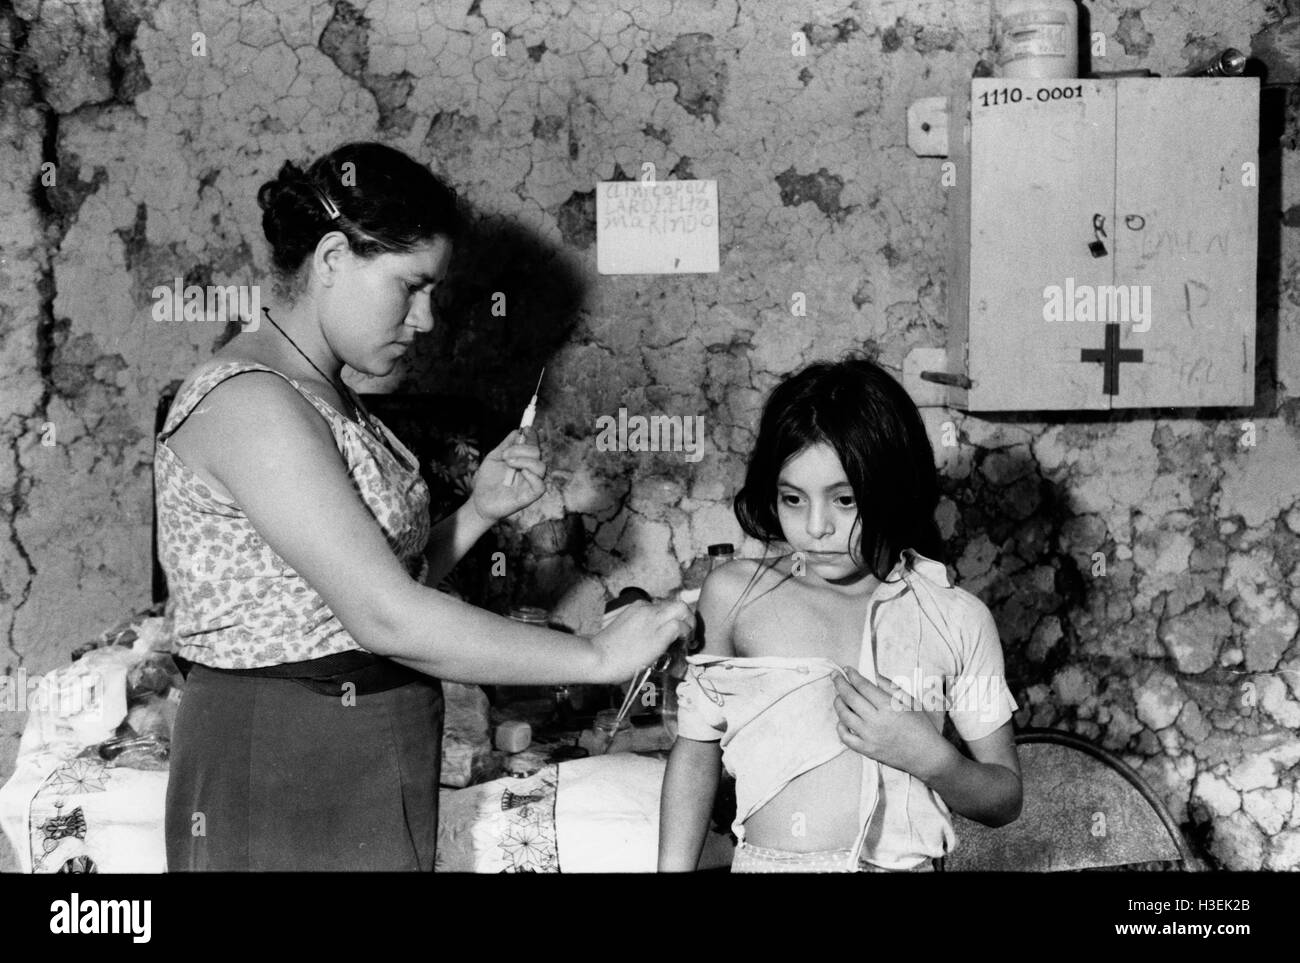 AN, EL SALVADOR, März 1984: Ausgebildete Sanitäter gibt einem Kind eine Inokulation. Stockfoto